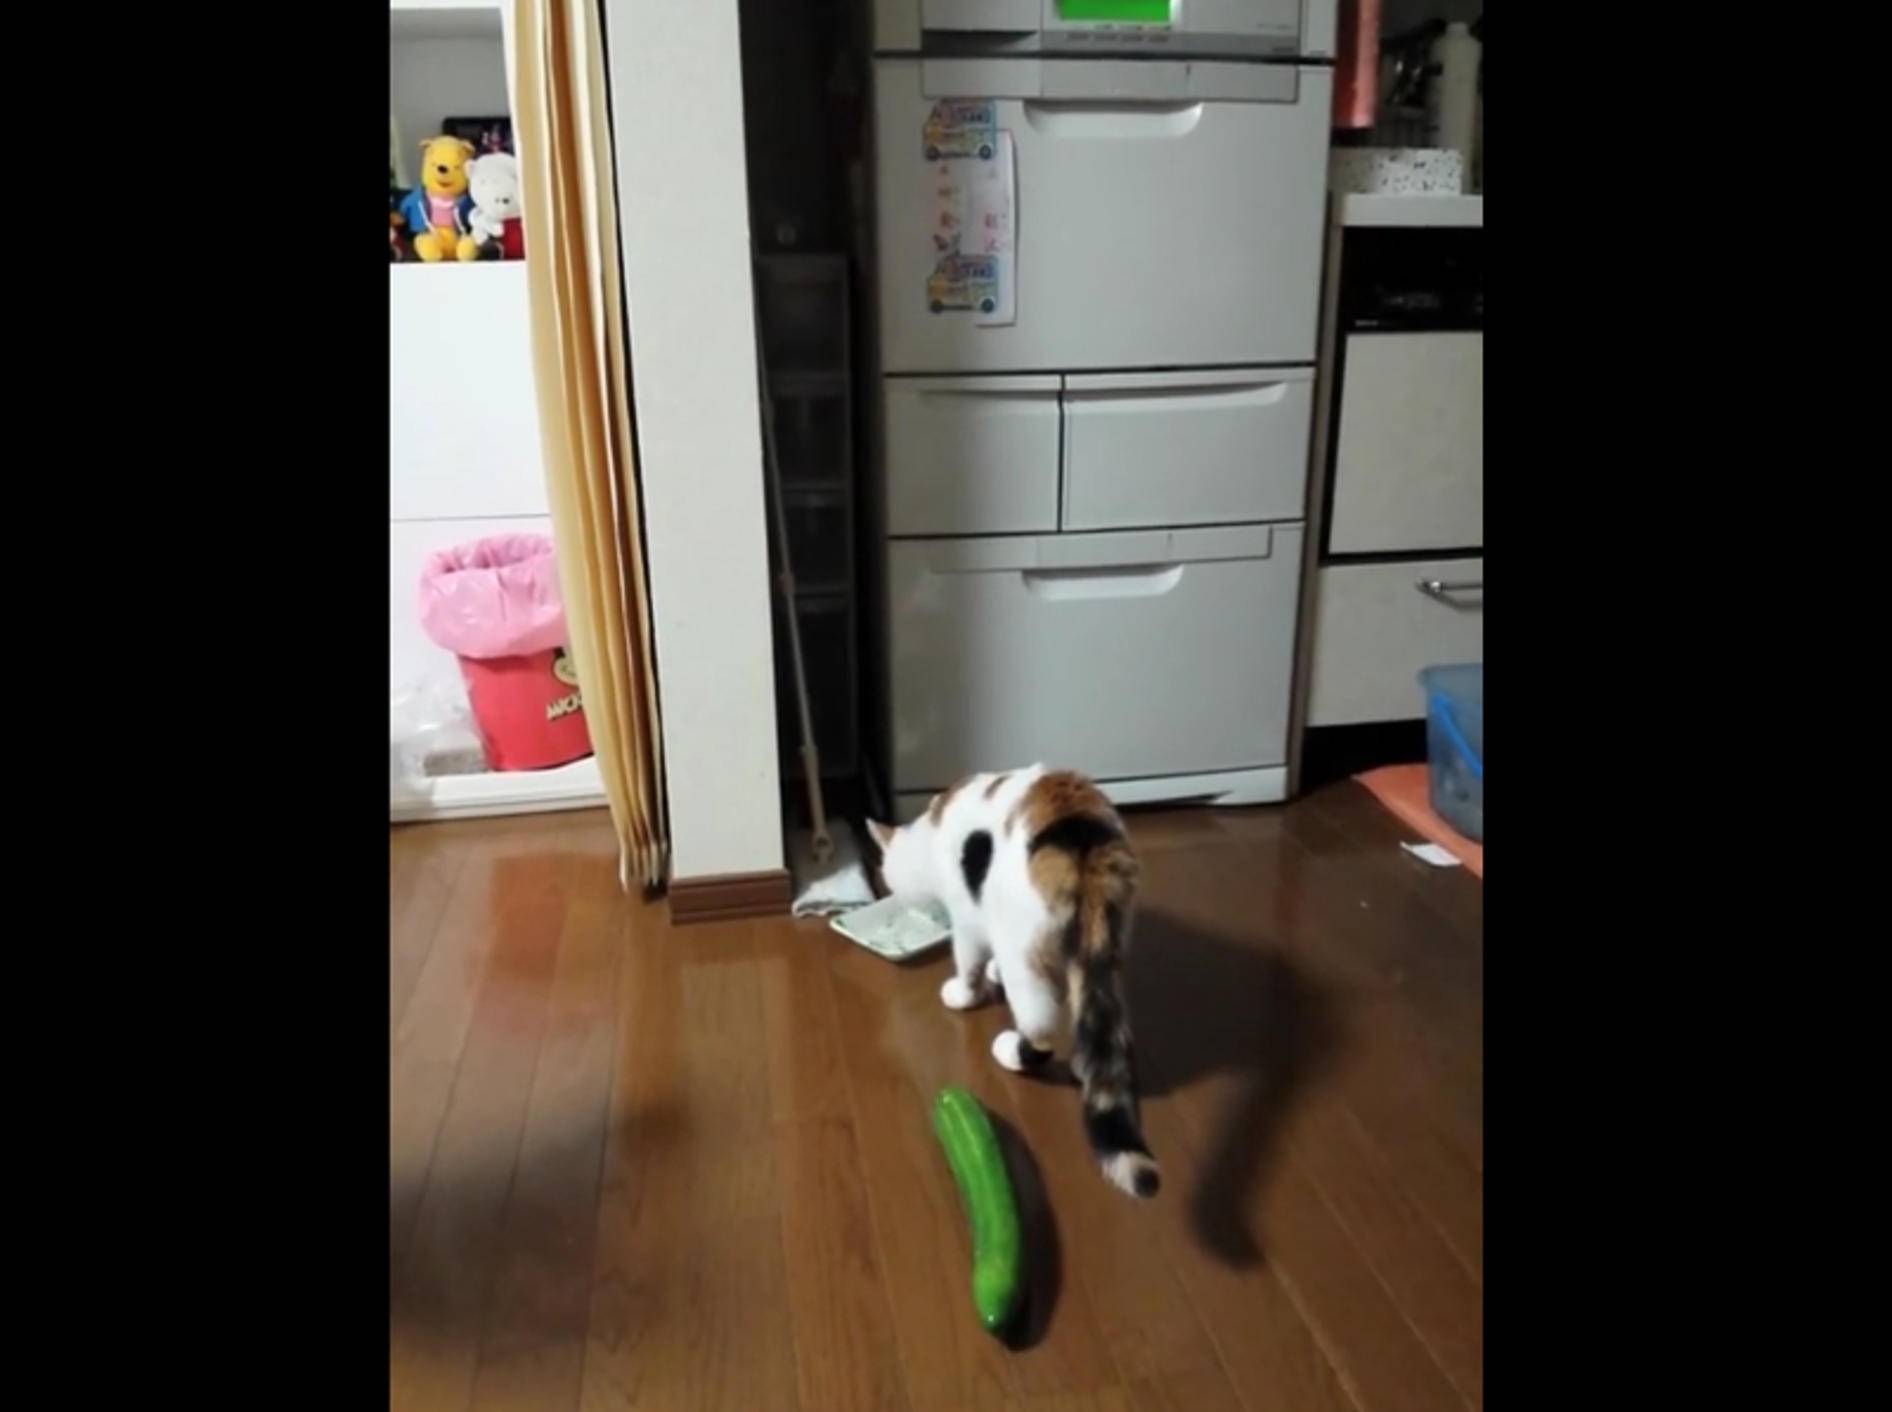 Katze erschrickt: "Hilfe, eine Gurke!" – Bild: YouTube / QPTV Funny